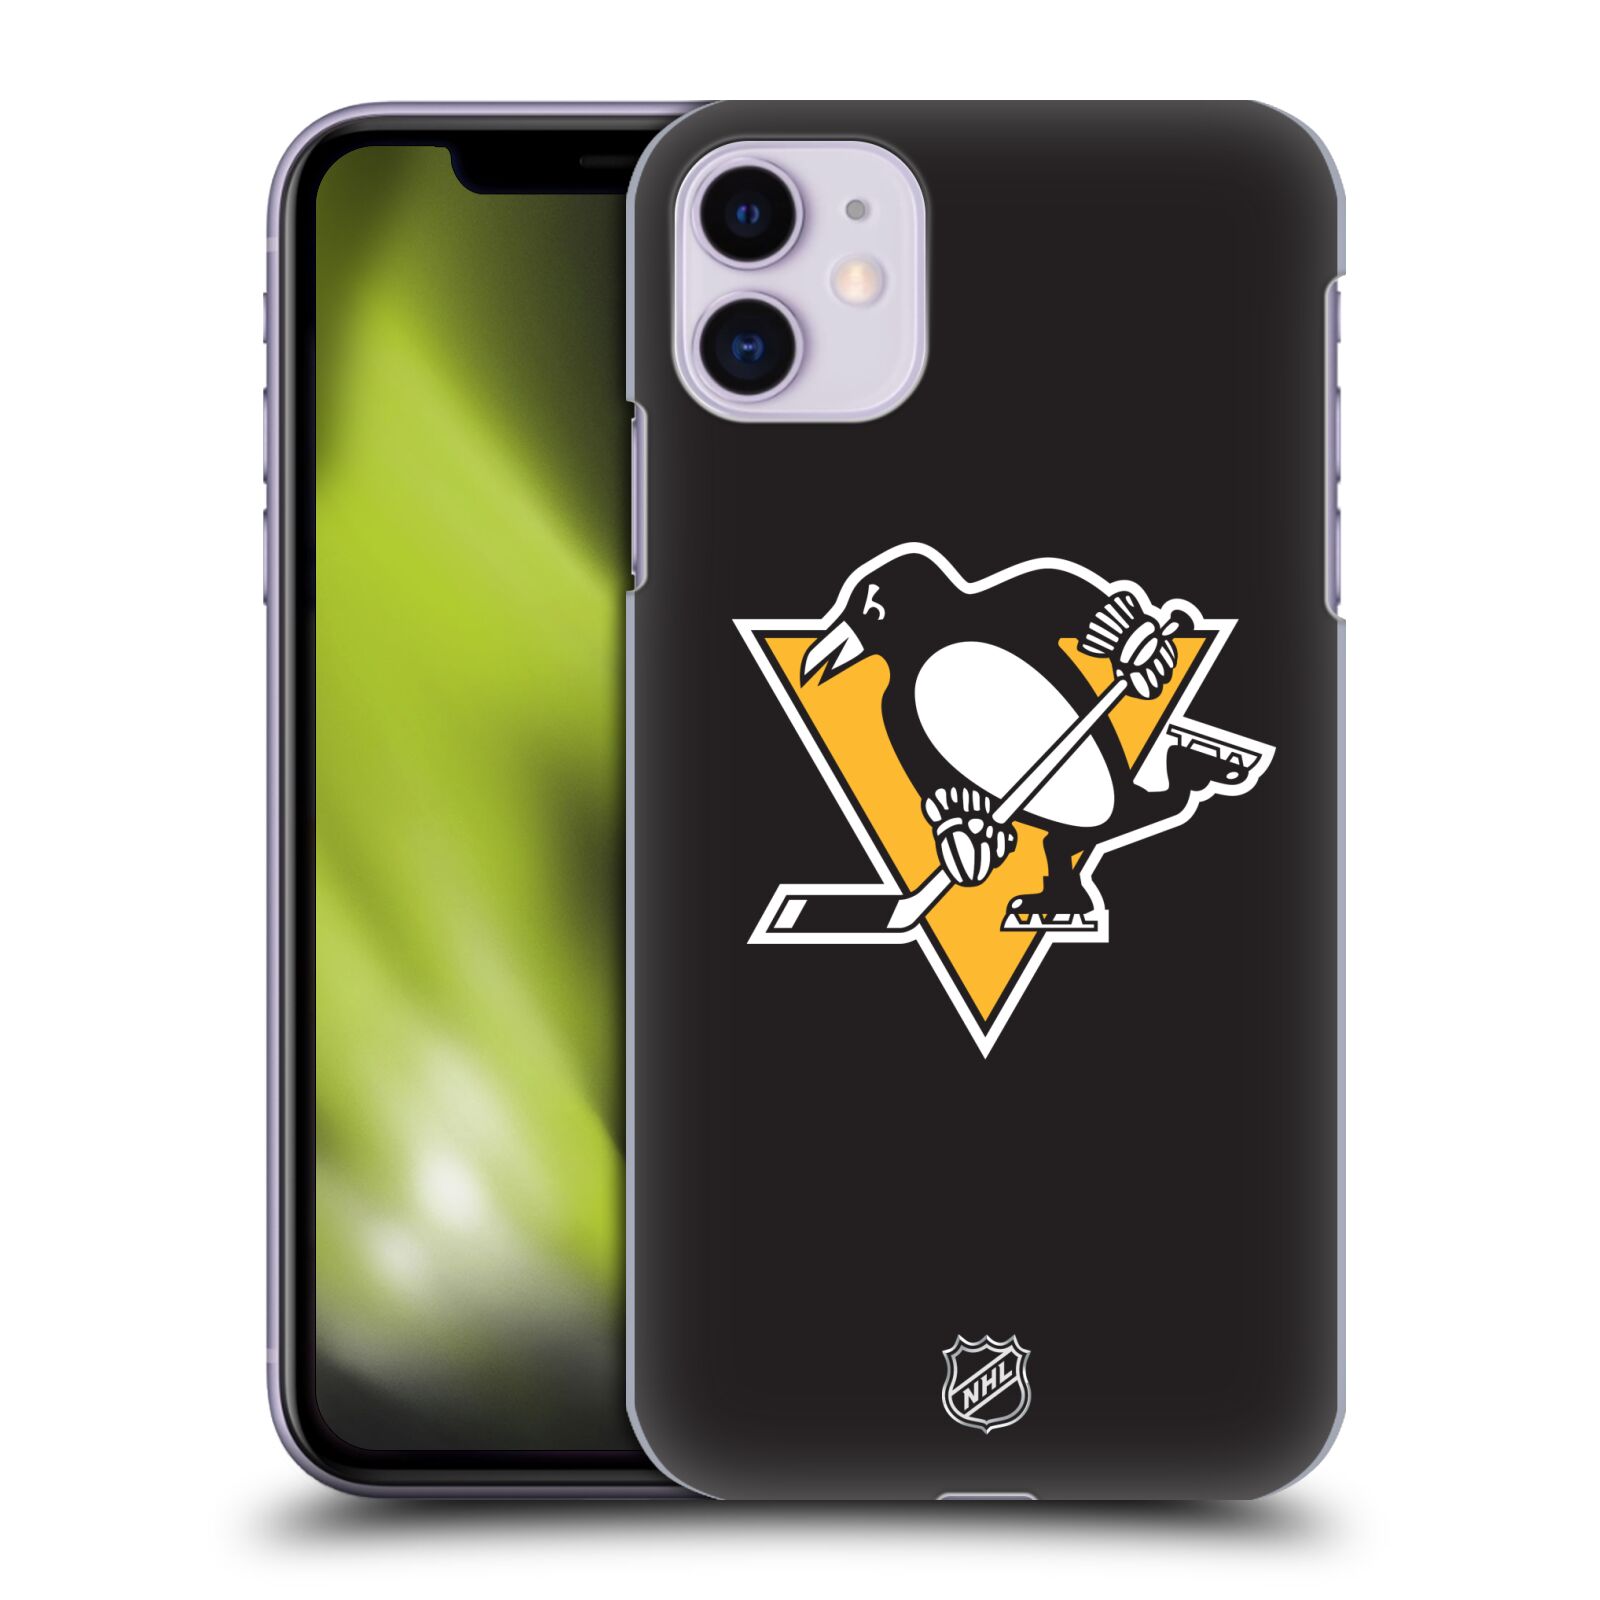 Pouzdro na mobil Apple Iphone 11 - HEAD CASE - Hokej NHL - Pittsburgh Penguins - černé pozadí znak